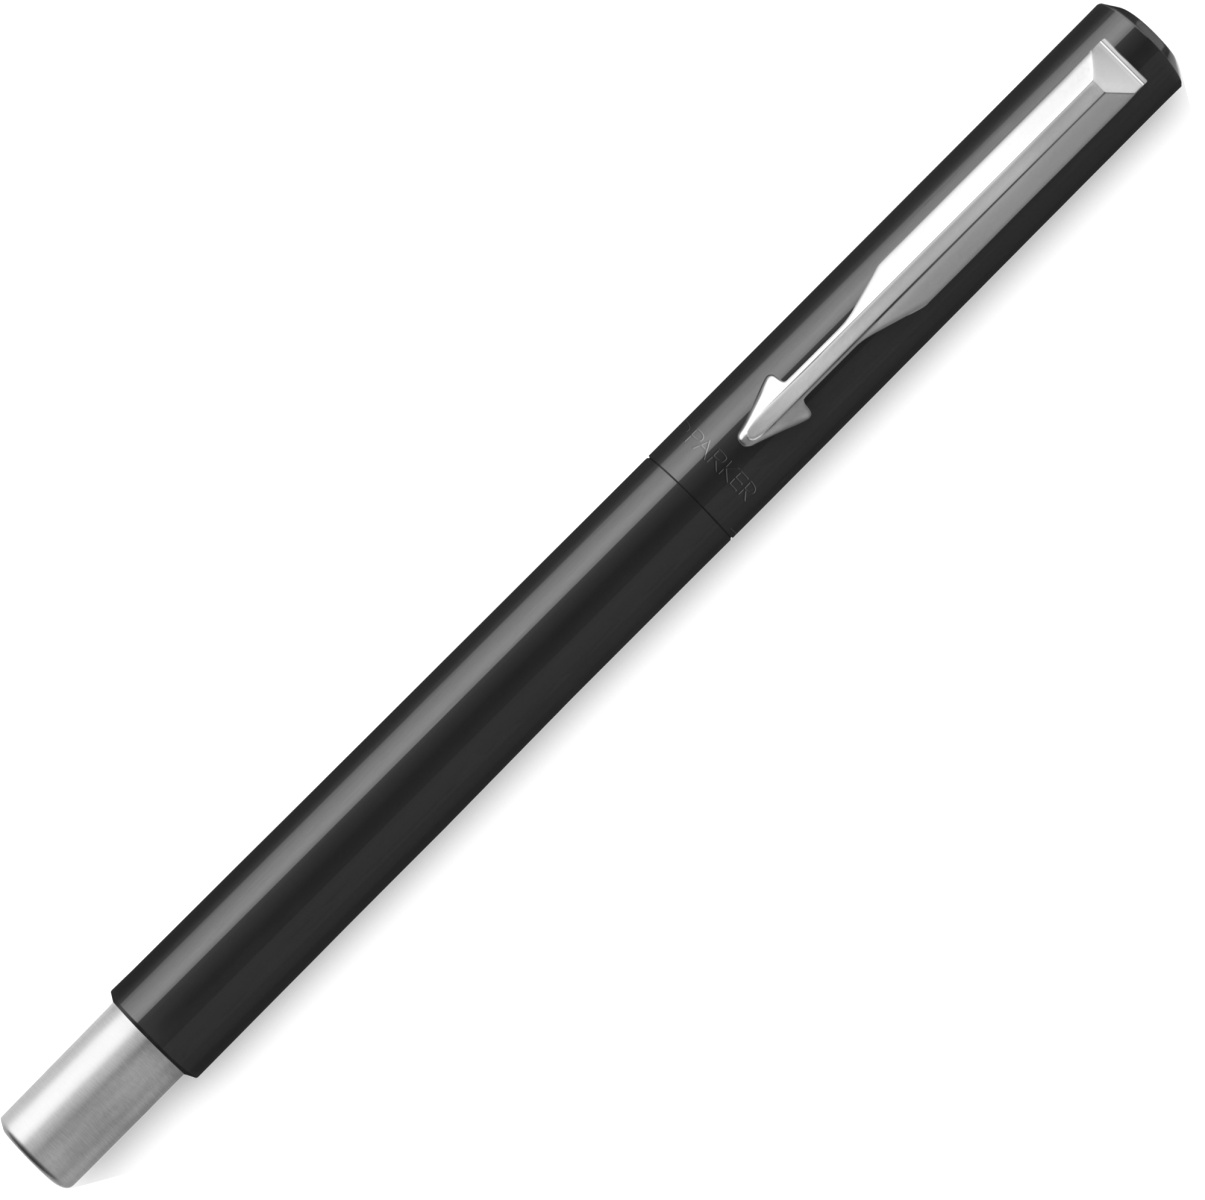  Ручка перьевая Parker Vector Standard F01, Black CT (Перо F), фото 2